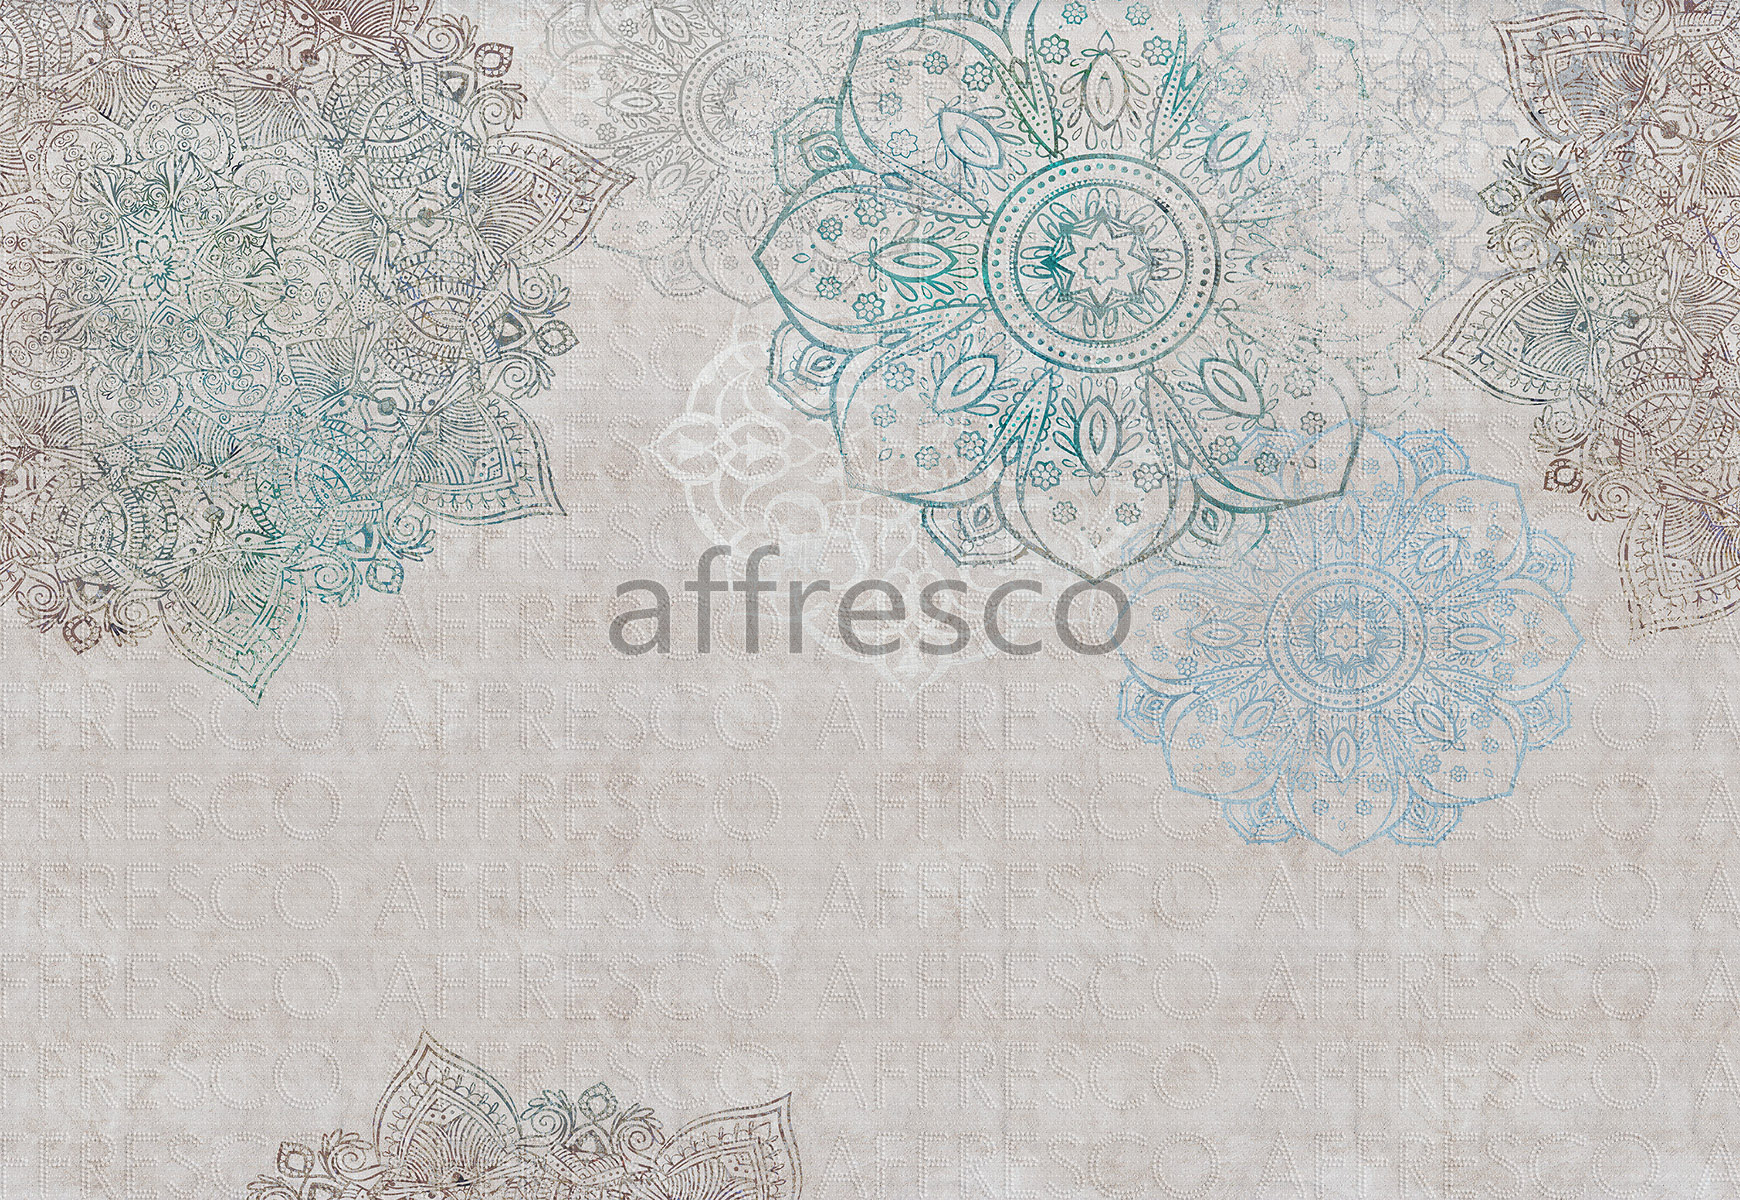 ID136310 | Graphics arts & Ornaments |  | Affresco Factory